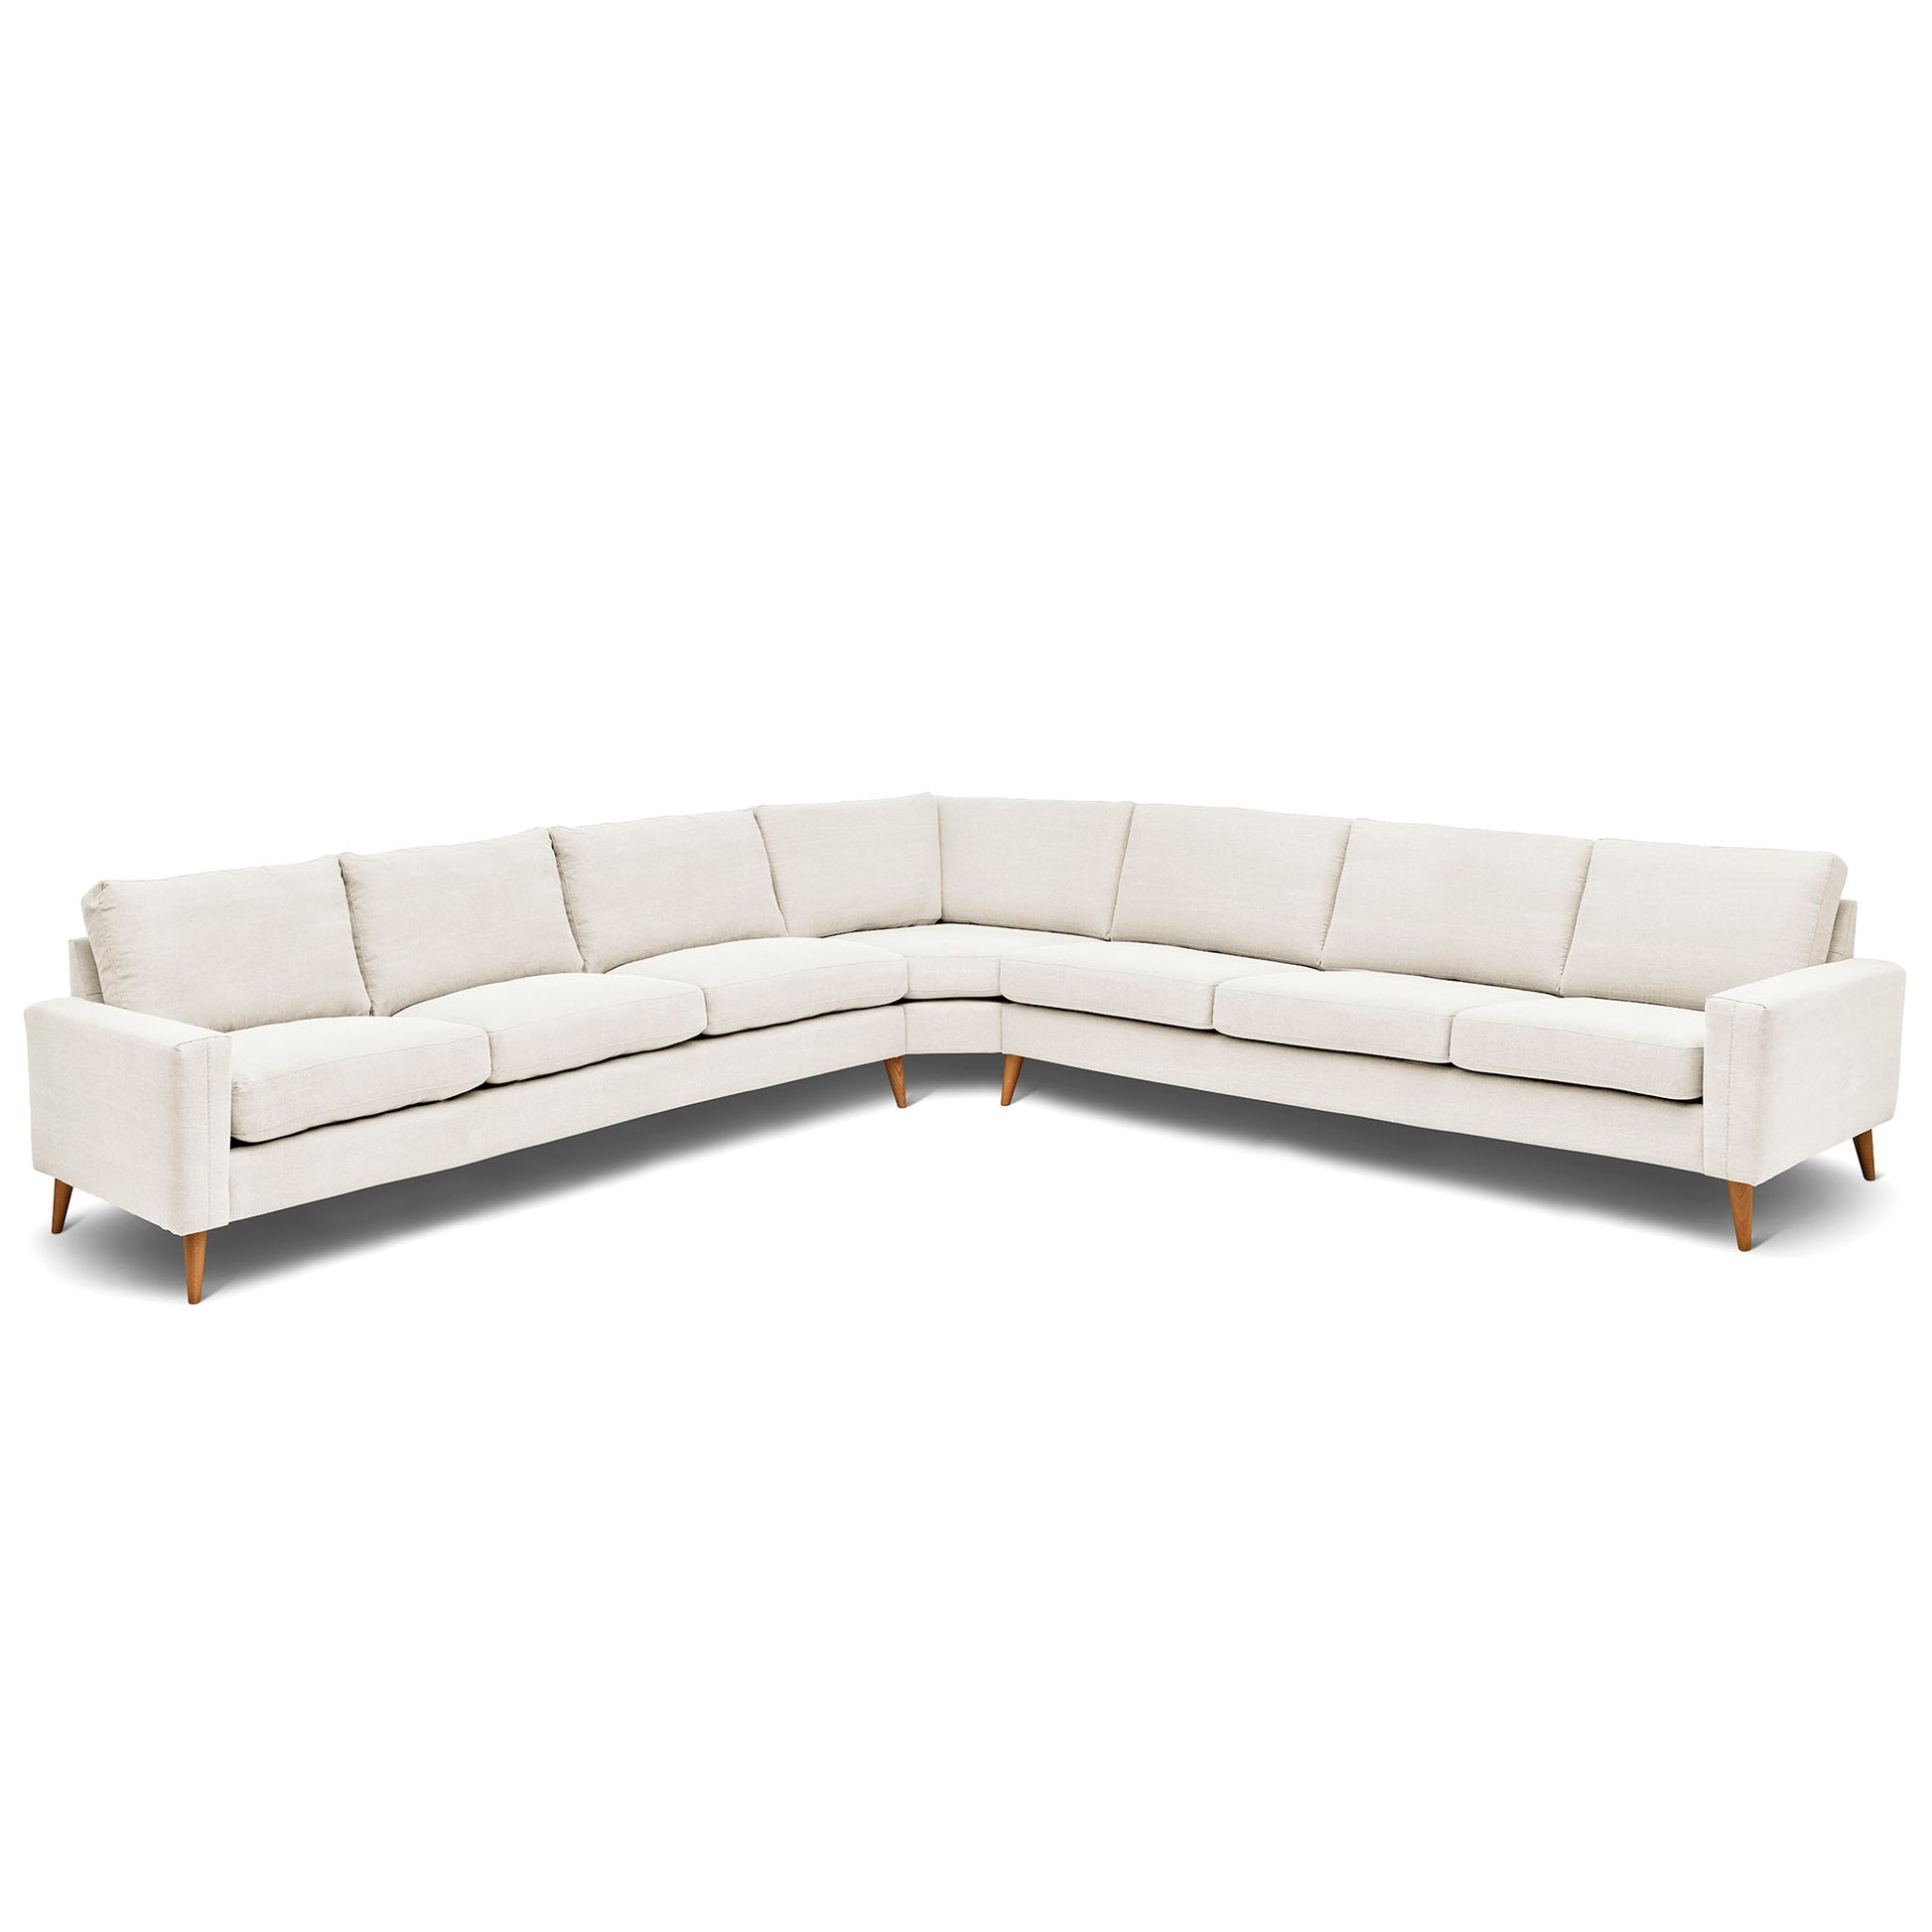 Stor kvadratisk hörnsoffa med måttet 360x360 cm. Sittvänlig soffa för äldre i vitt tyg